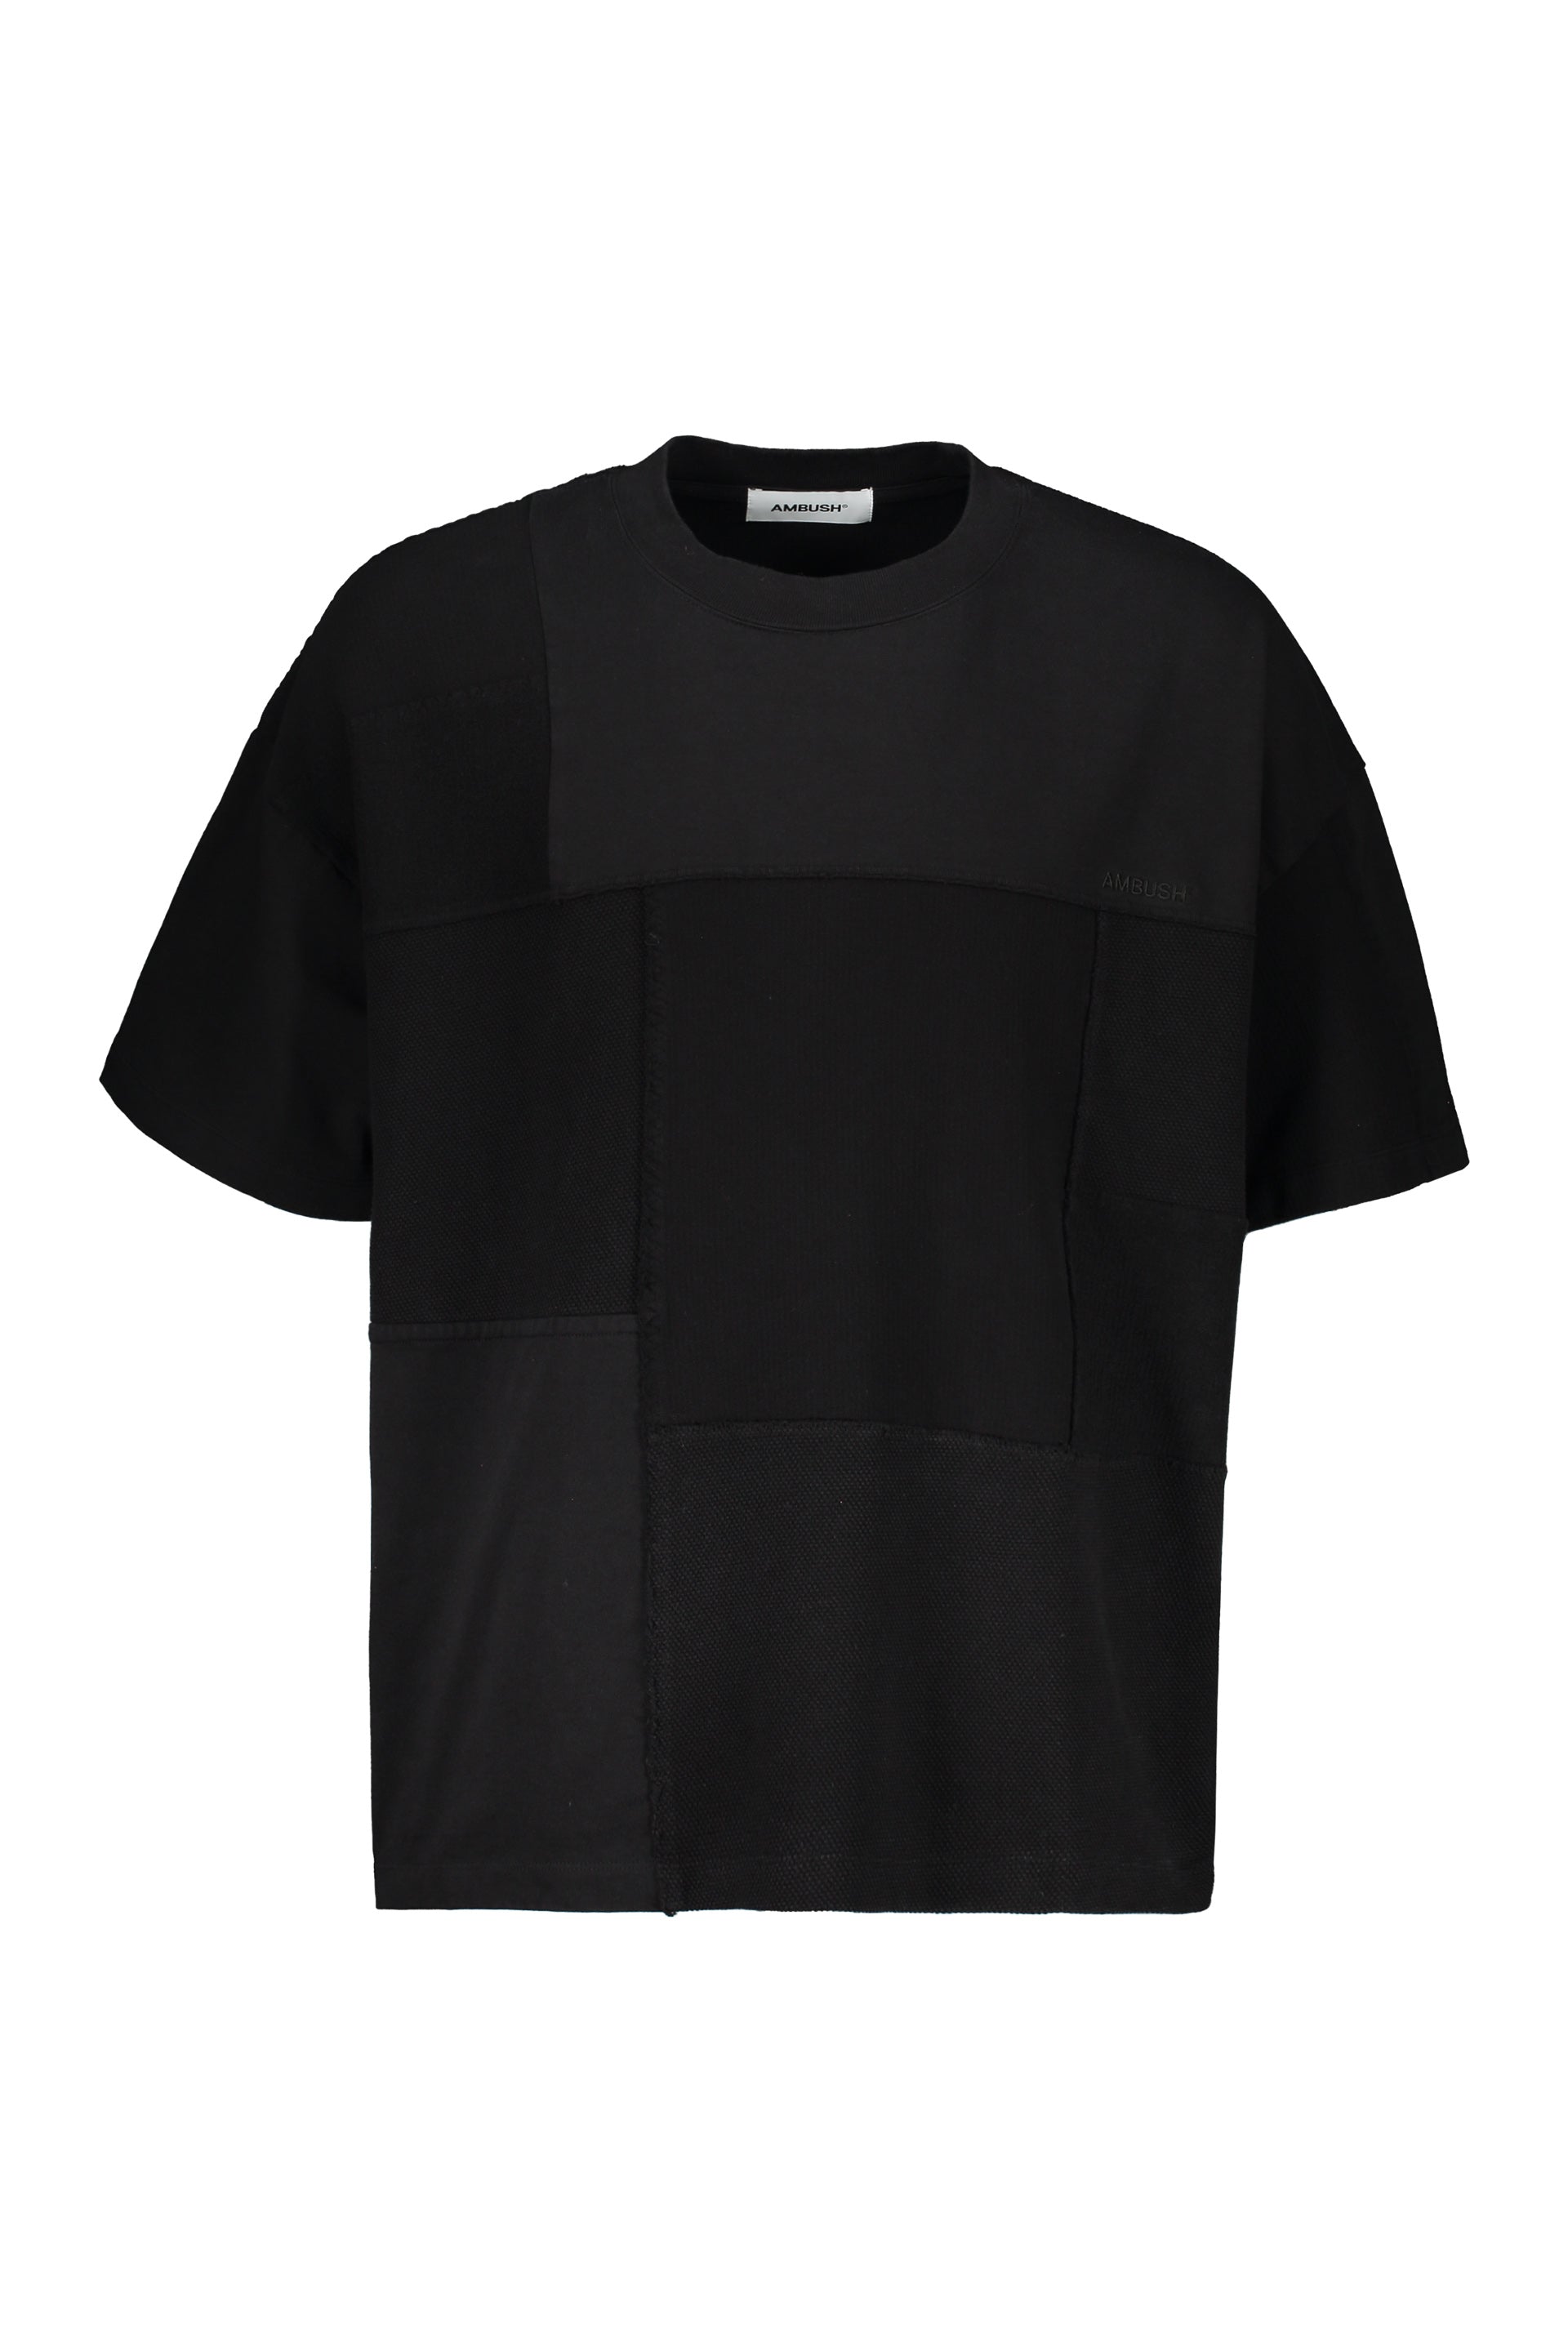 AMBUSH-OUTLET-SALE-Cotton-maxi-T-shirt-Shirts-S-ARCHIVE-COLLECTION_326a915f-c1c3-4475-ba8e-bc0229eb7896.jpg